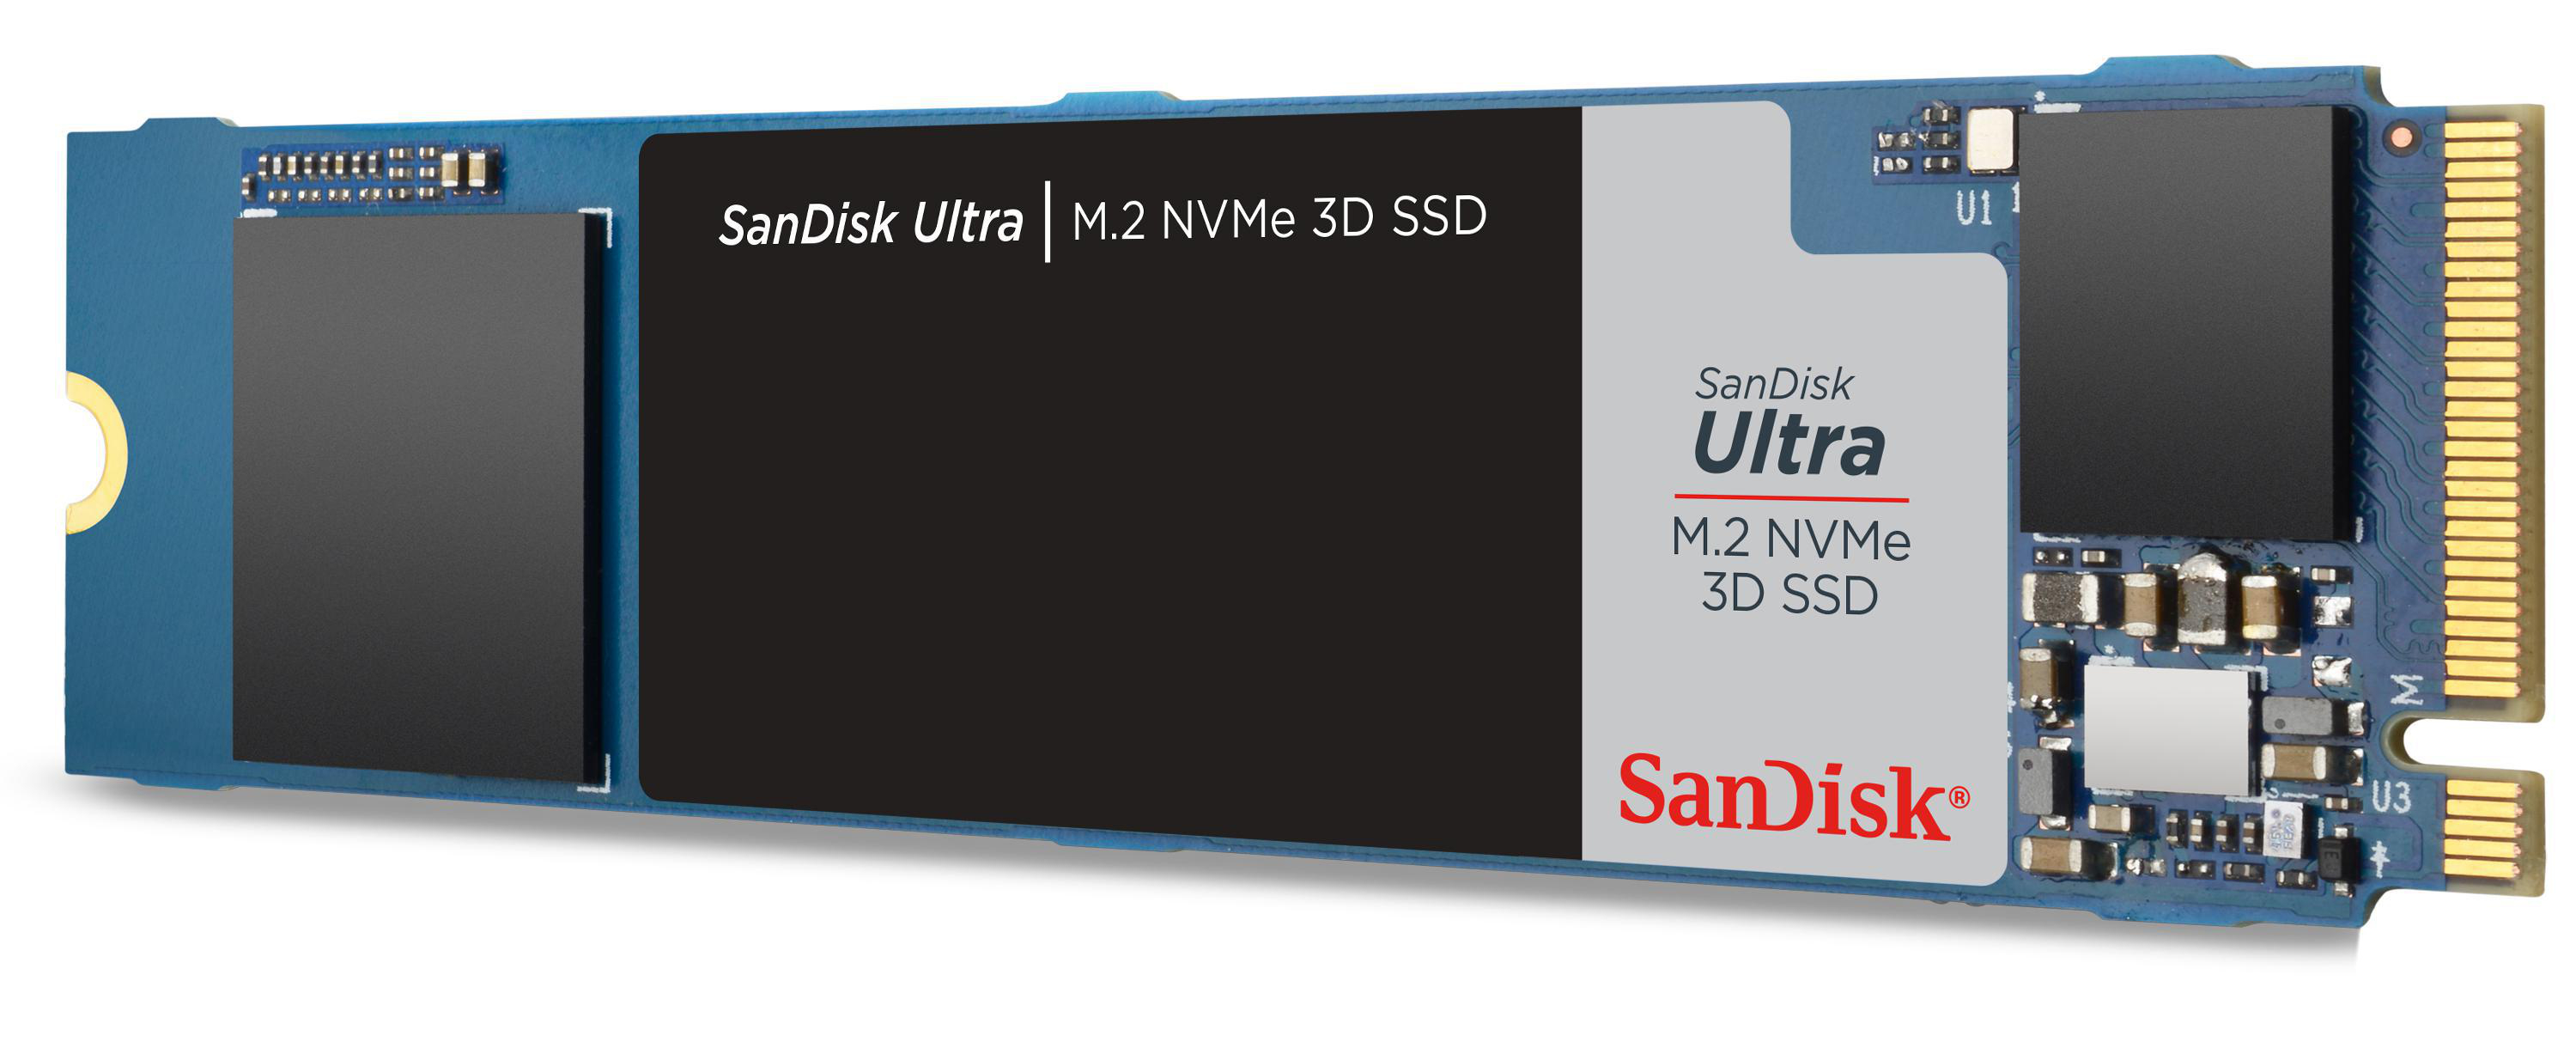 SANDISK Ultra 3D via TB Speicher, 1 intern M.2 Interner NVMe, Speicher